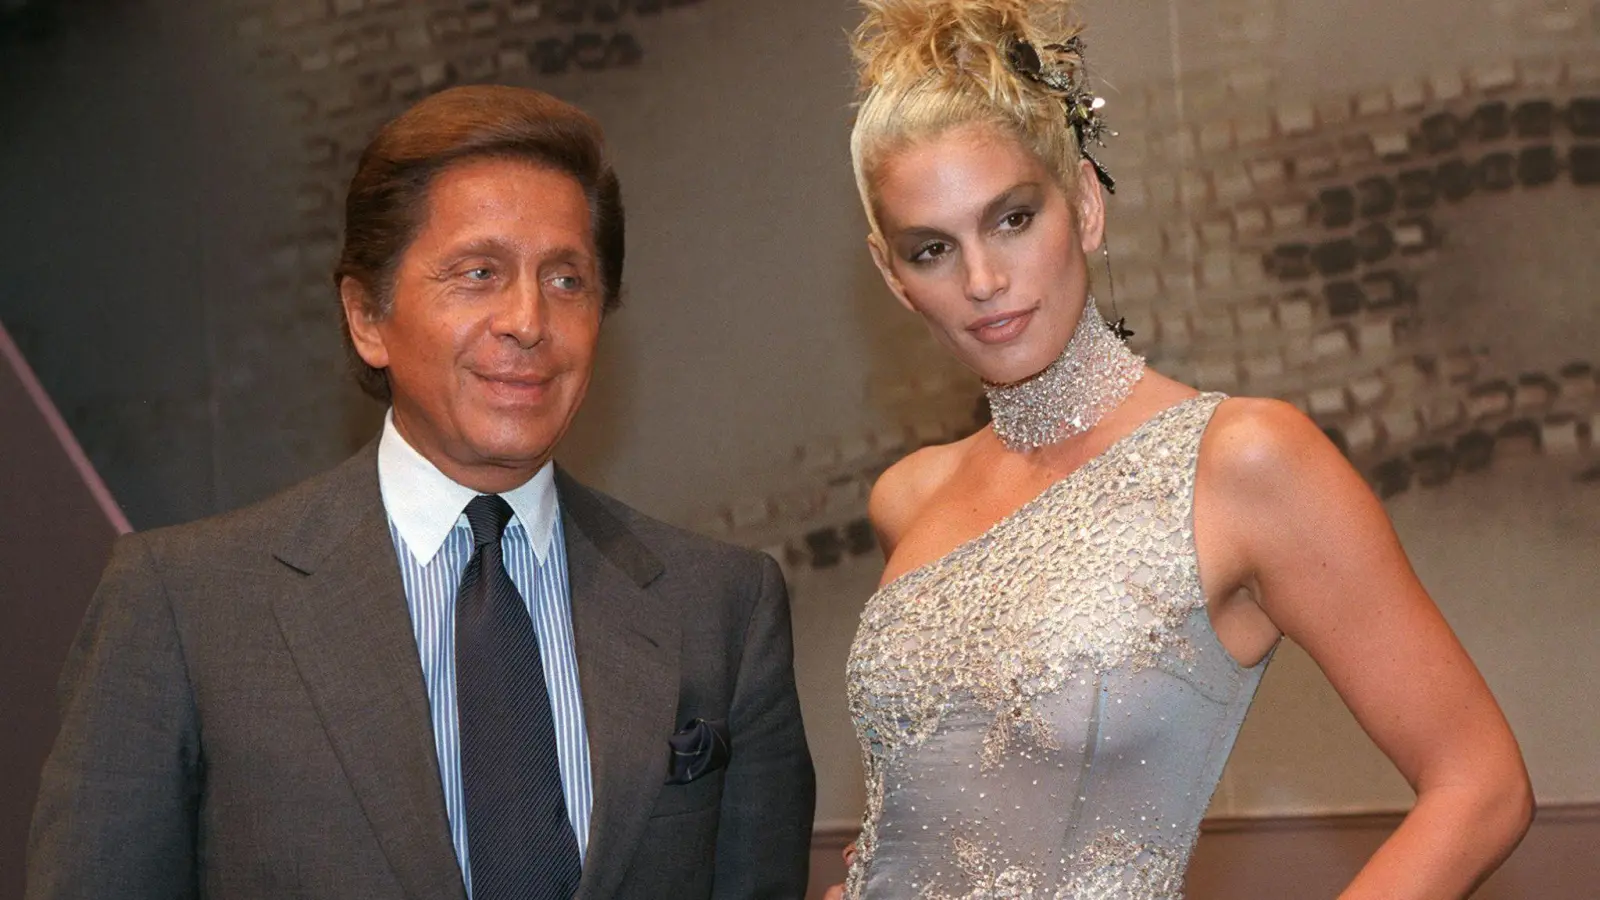 Der italienische Designer Valentino trifft oft auf berühmte Schönheiten. 1997 ließ er sich etwa bei einer Modenschau mit US-Topmodel Cindy Crawford ablichten. Am 11. Mai feiert der Modeschöpfer seinen 90. Geburtstag. (Foto: Thomas Coex/dpa)